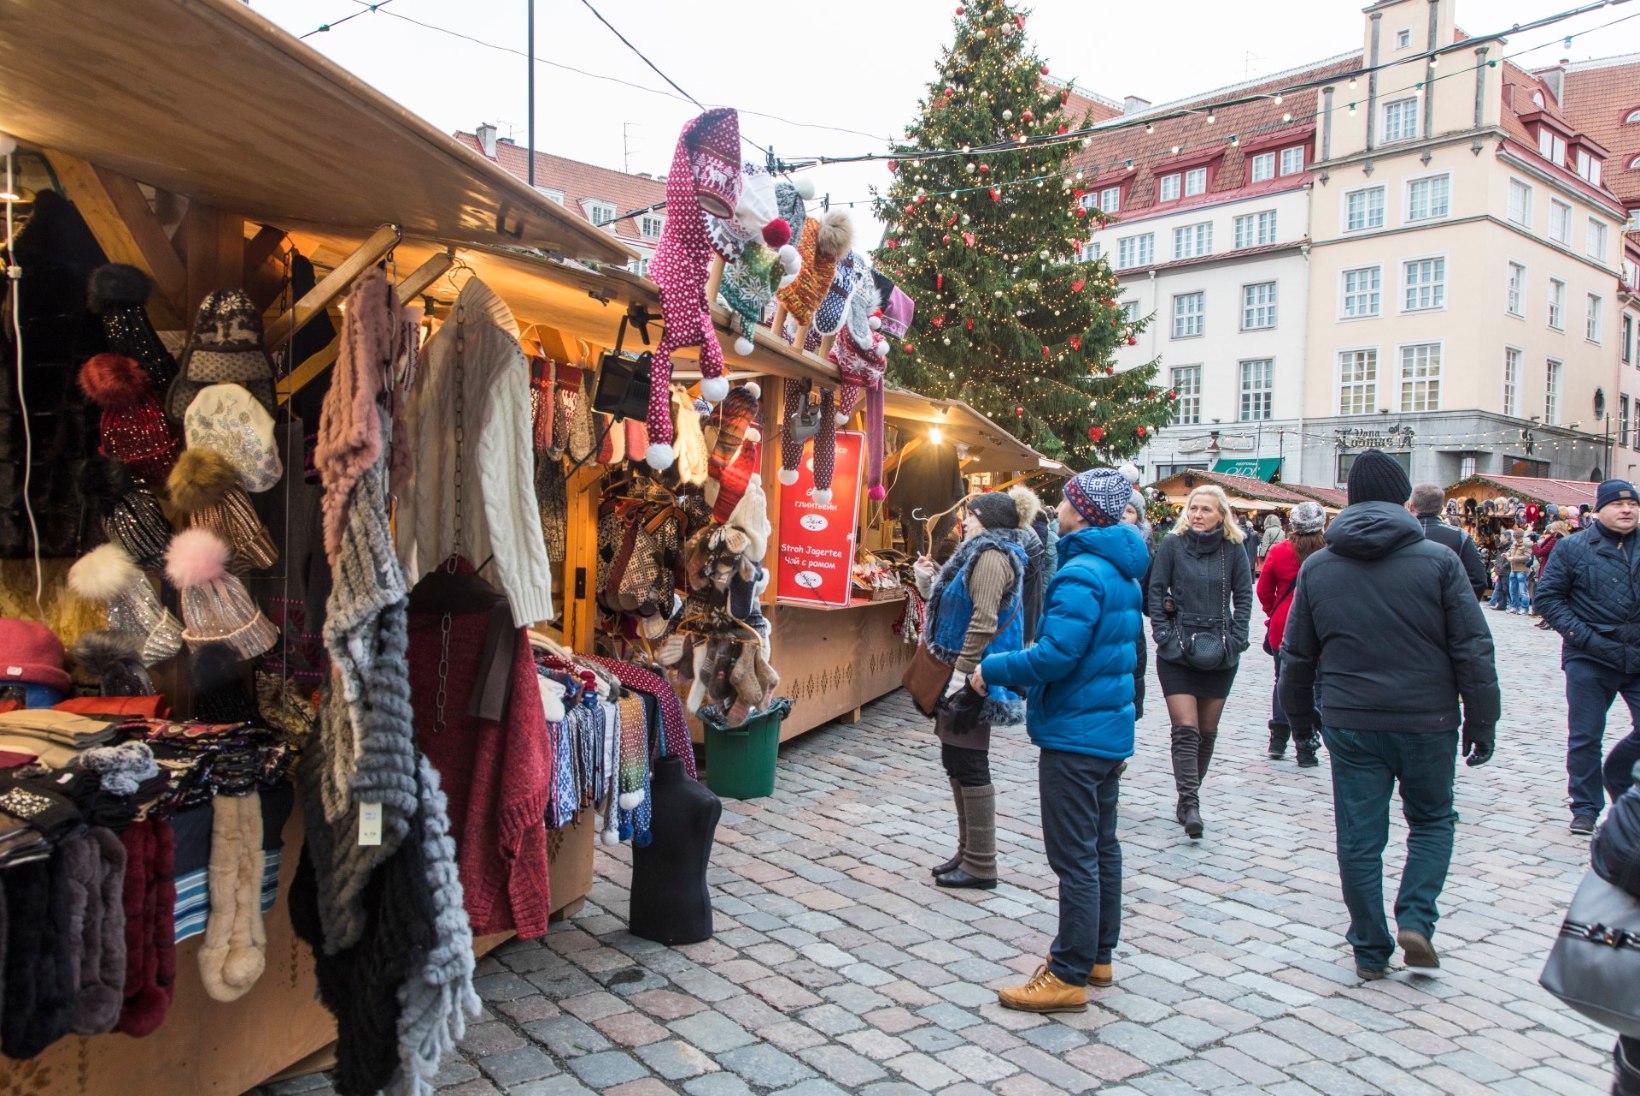 Jõuluturult saab osta nii Leedu juustukera kui ka Pärnu raudnagi